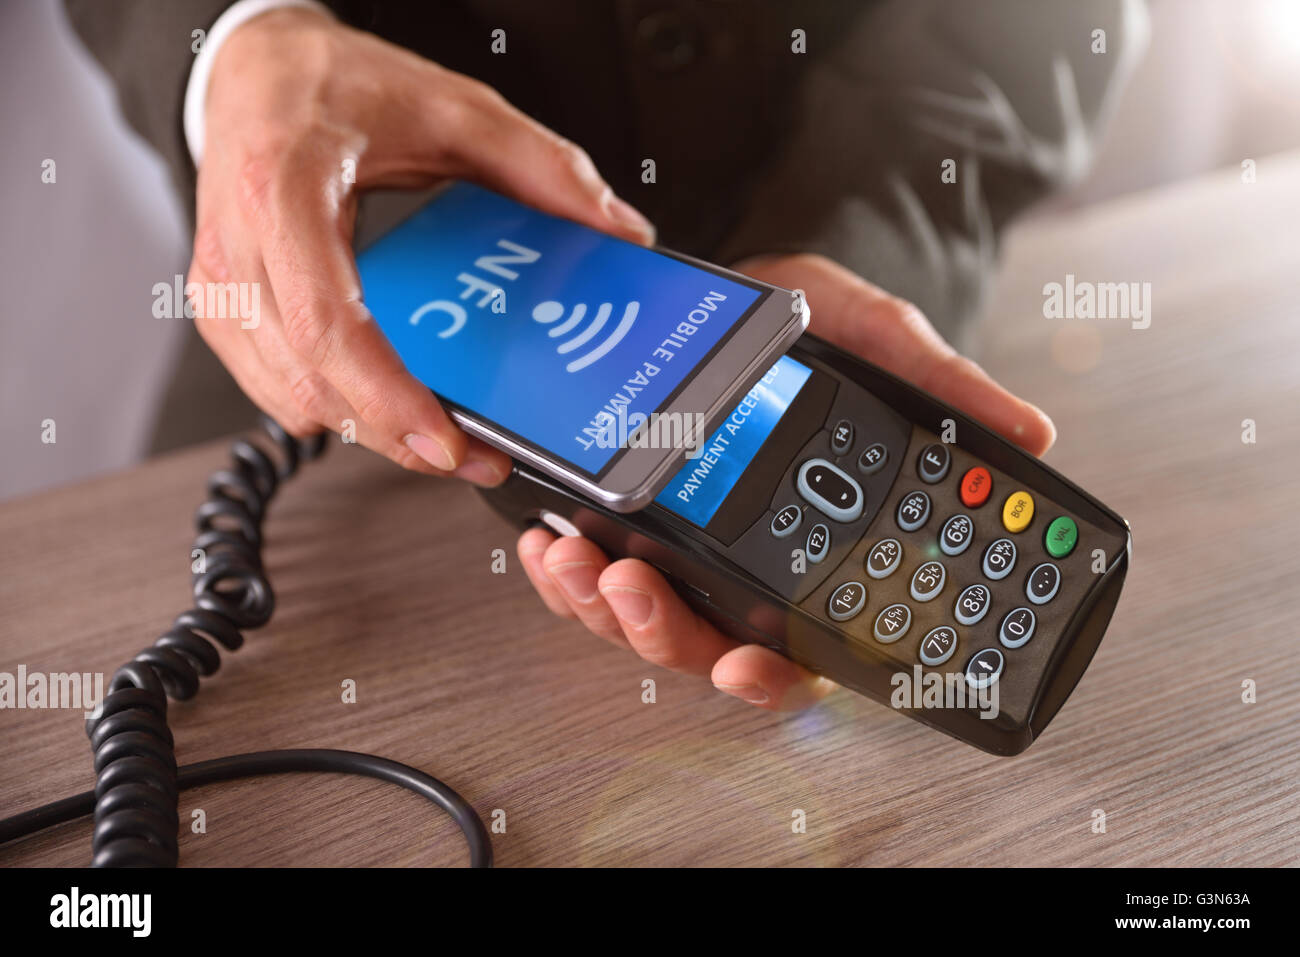 Zahlung auf einer Messe durch Mobile und NFC-Technologie. Front erhöhte Sicht. Horizontale Komposition. Stockfoto